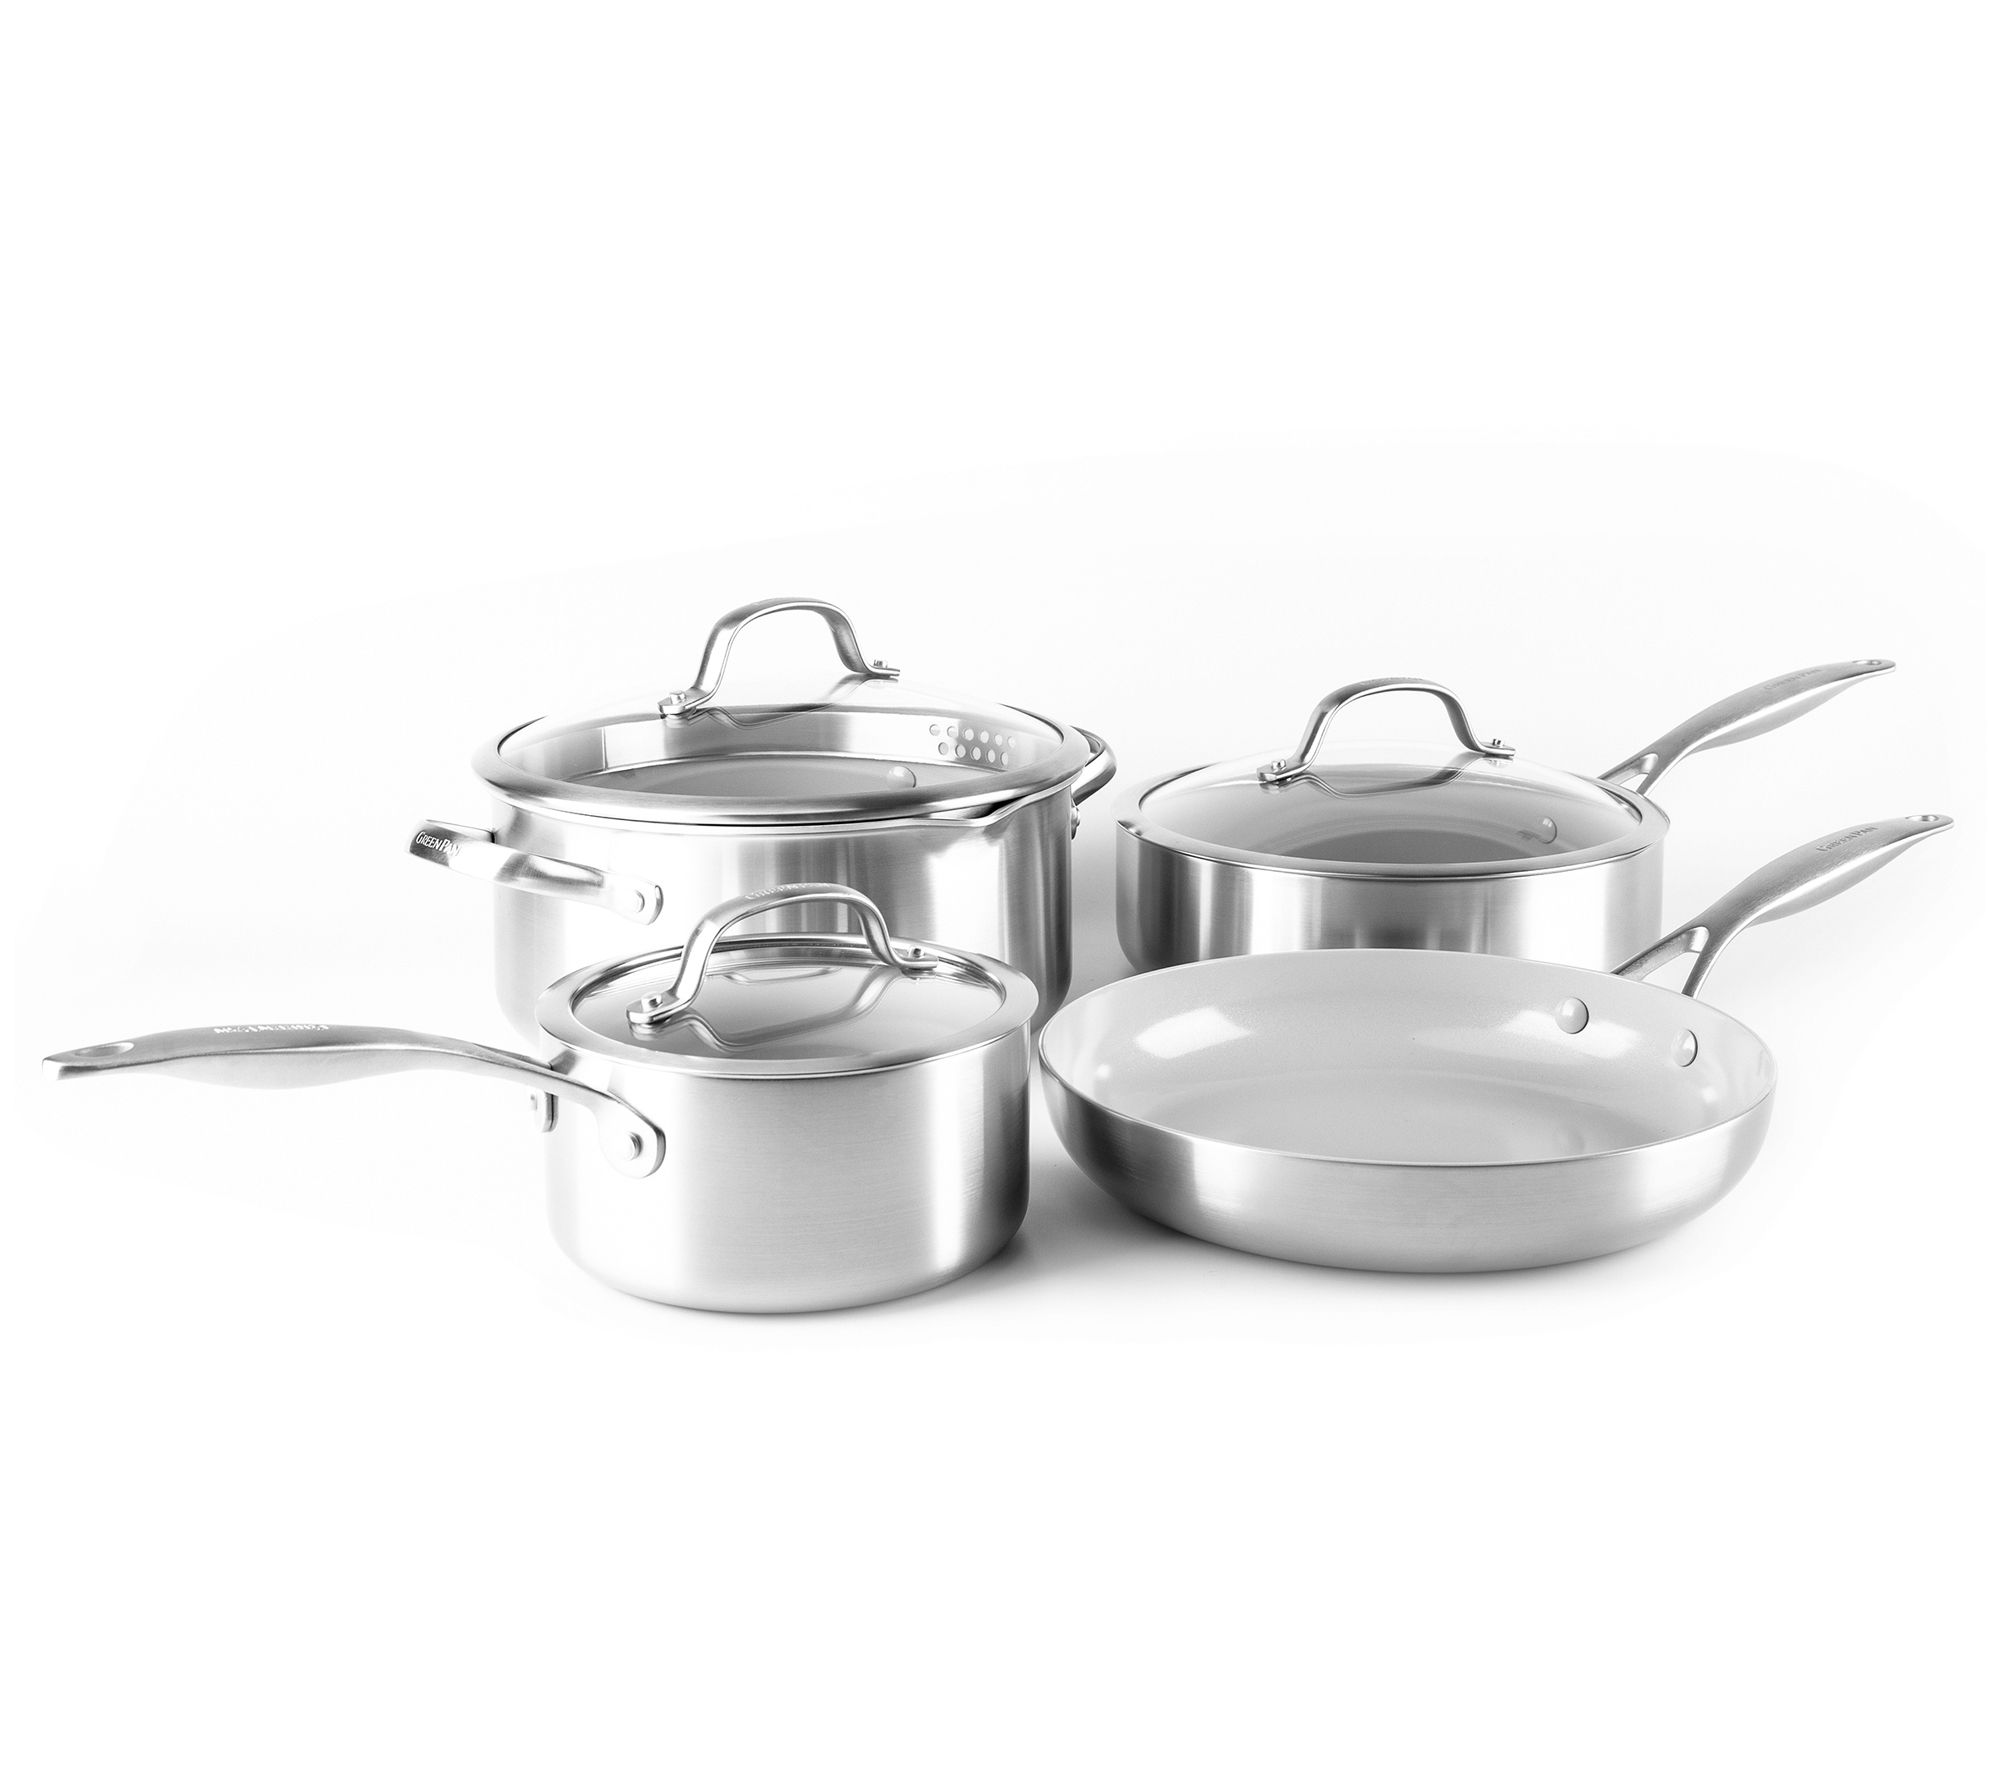 Ceramic Cookware Set, White Pots and Pans Set Nonstick,7 PCS